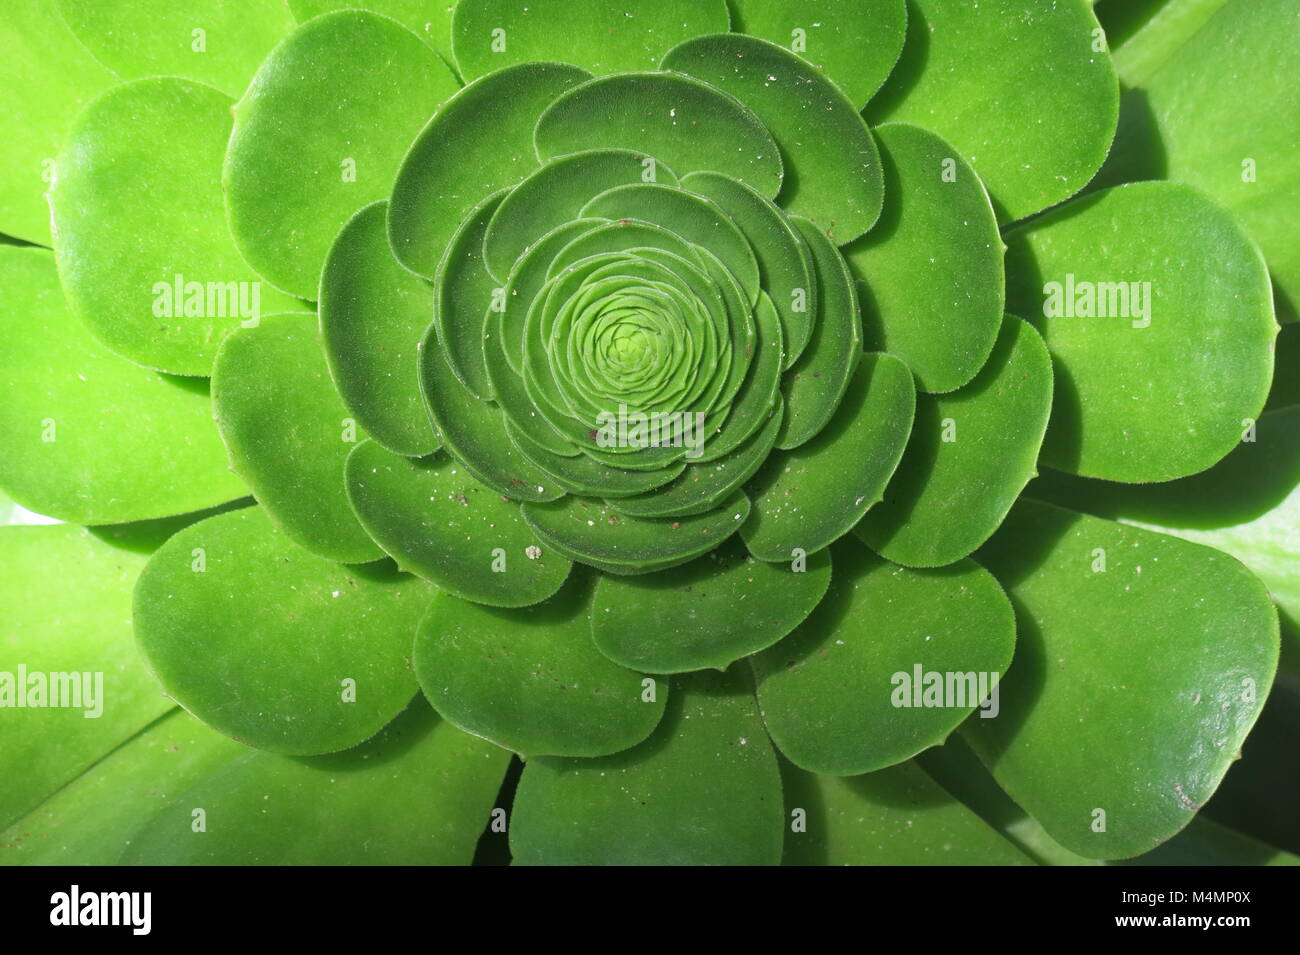 Nahaufnahme der kreisförmigen Form und wachsartige Blätter von einem grünen saftigen Zierpflanzen. Stockfoto